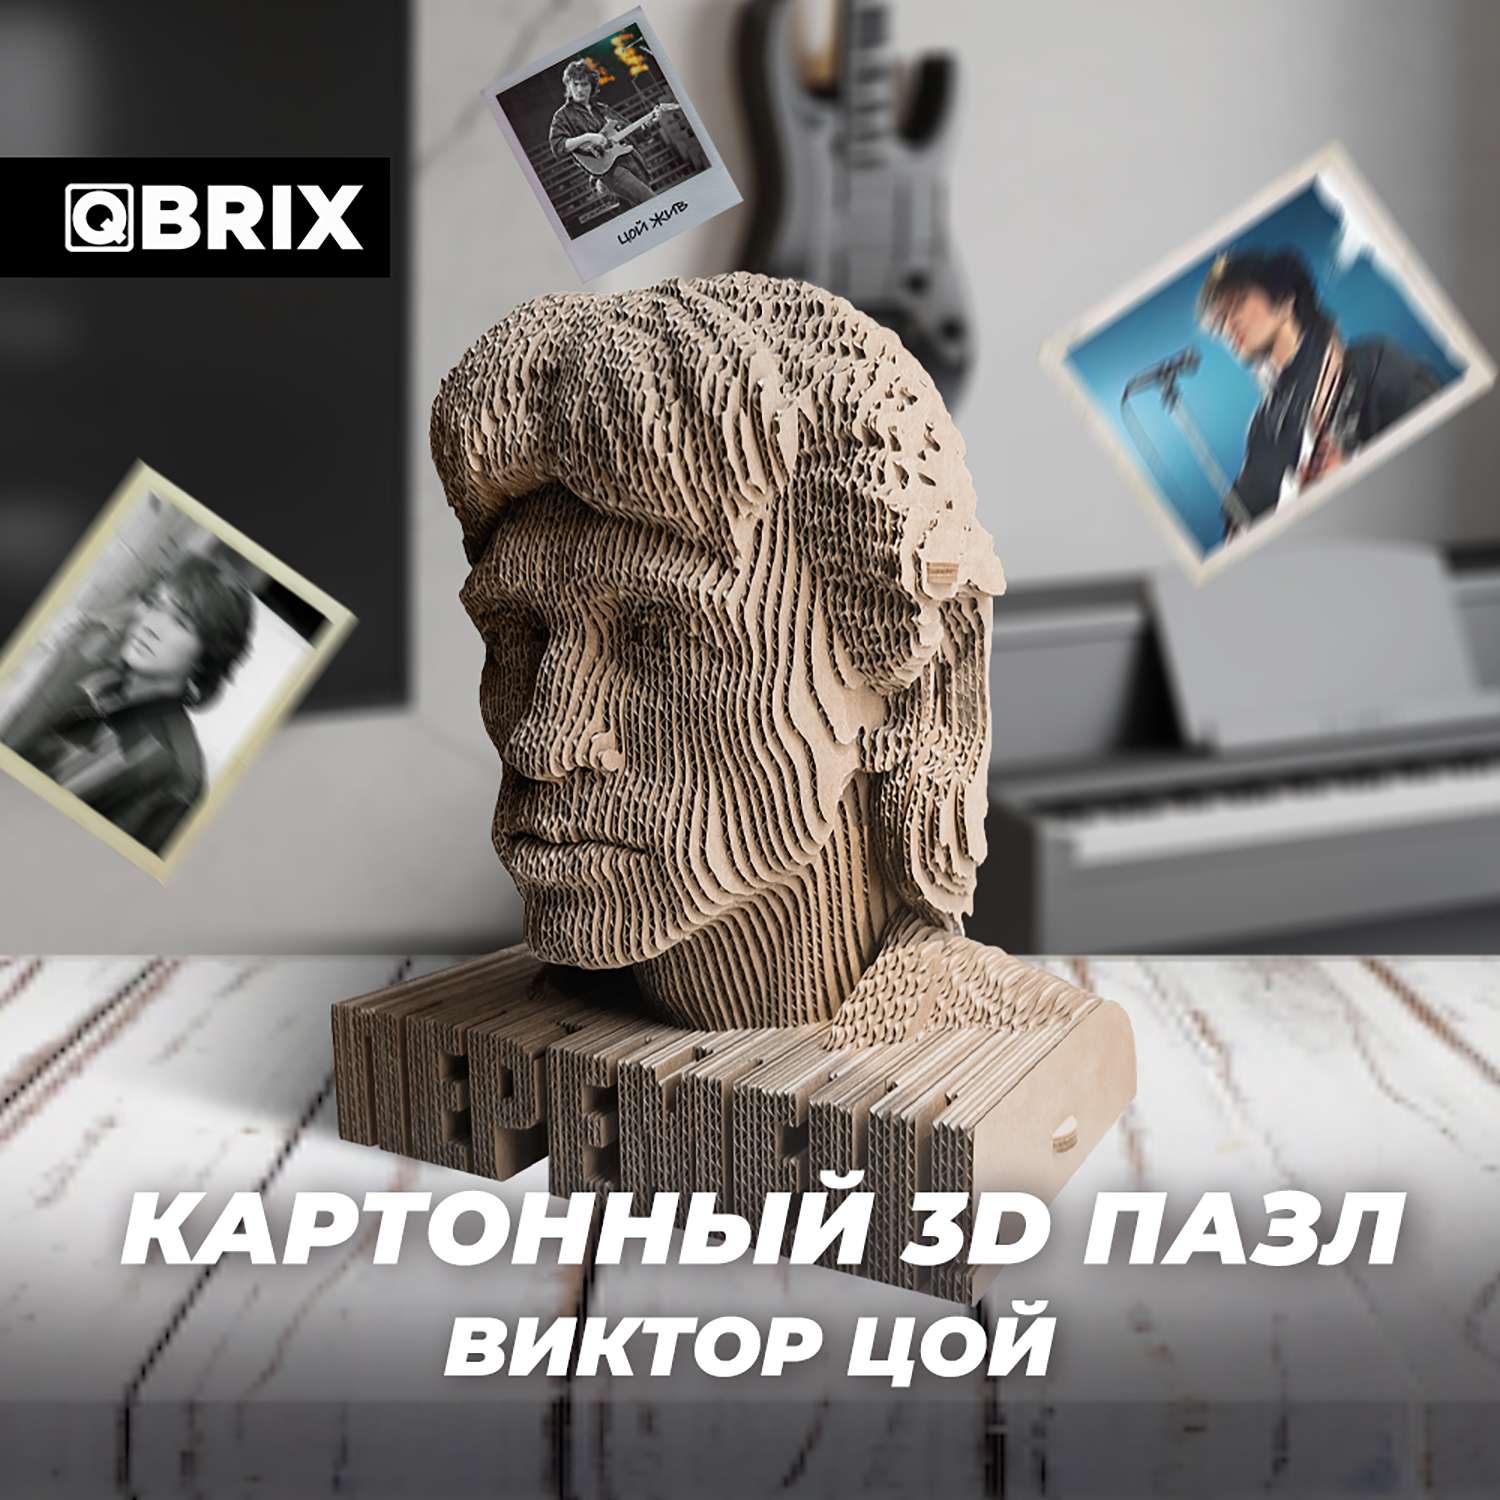 Конструктор QBRIX 3D картонный Виктор Цой 20016 20016 - фото 4